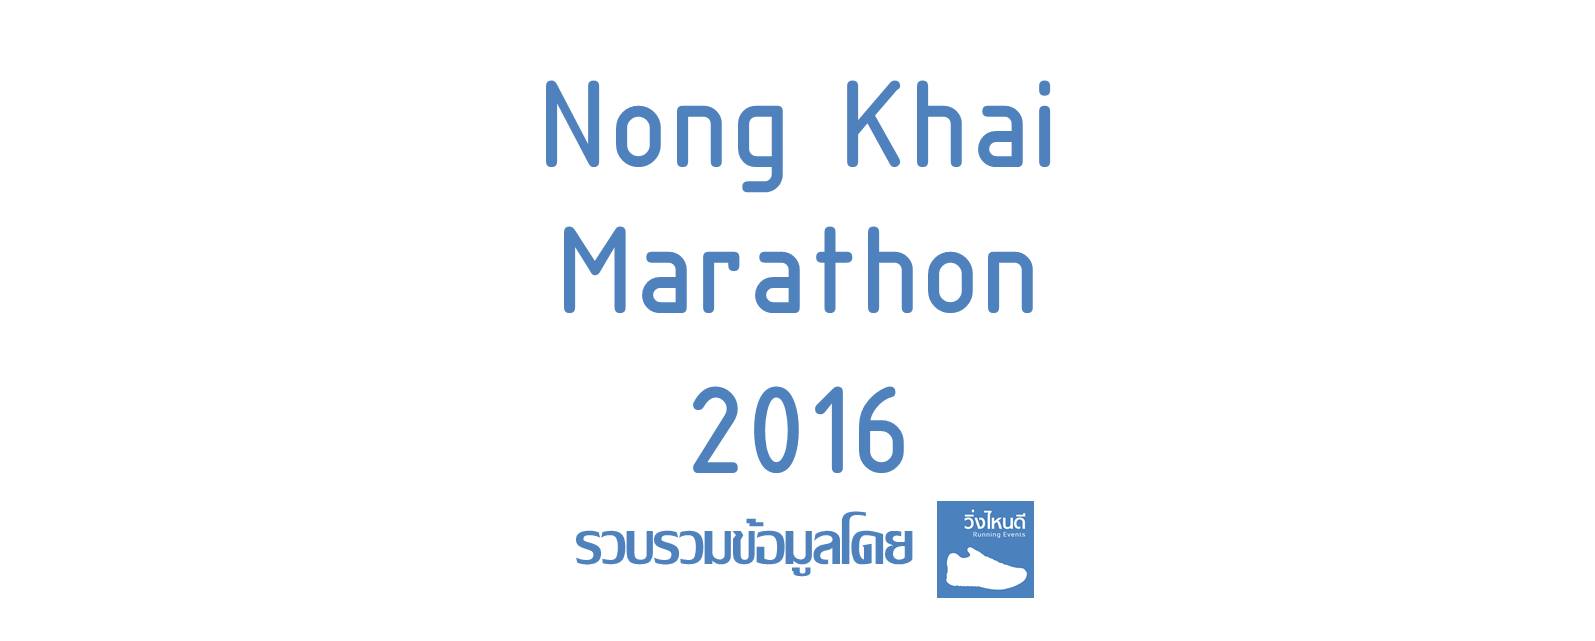 Nong Khai Marathon 2016